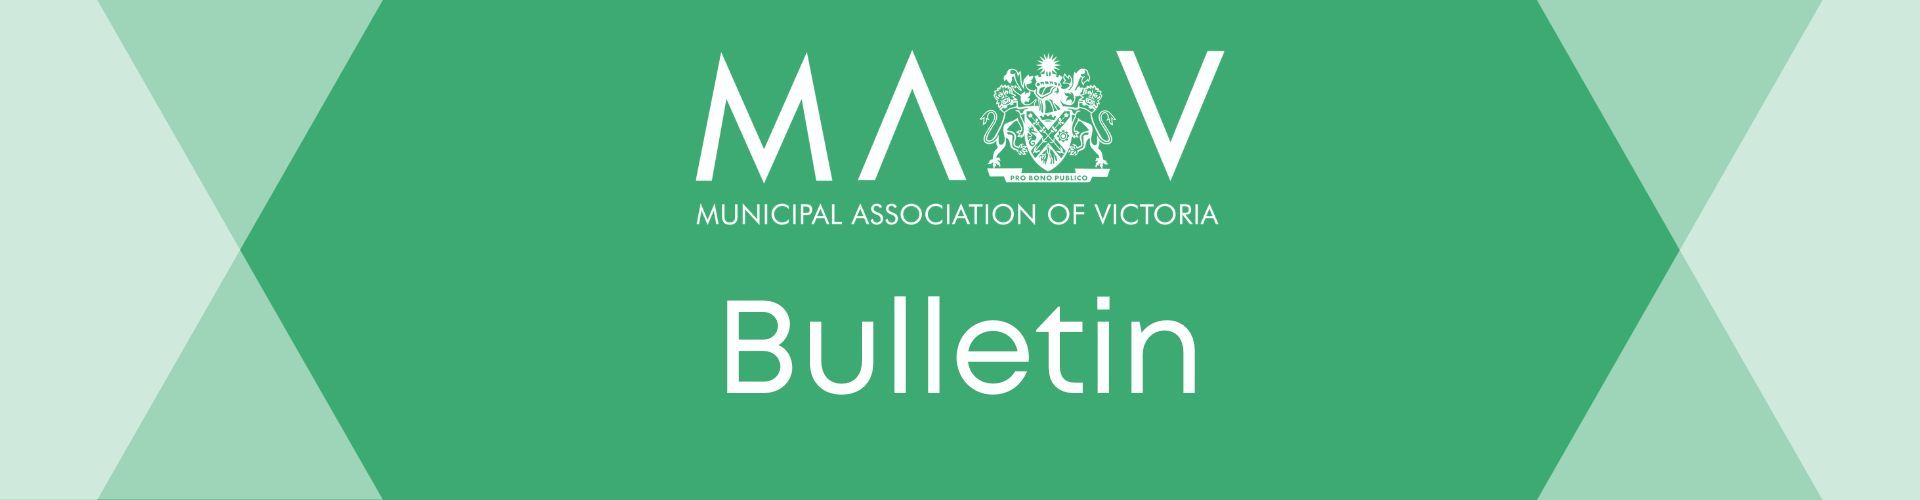 MAV Bulletin Image